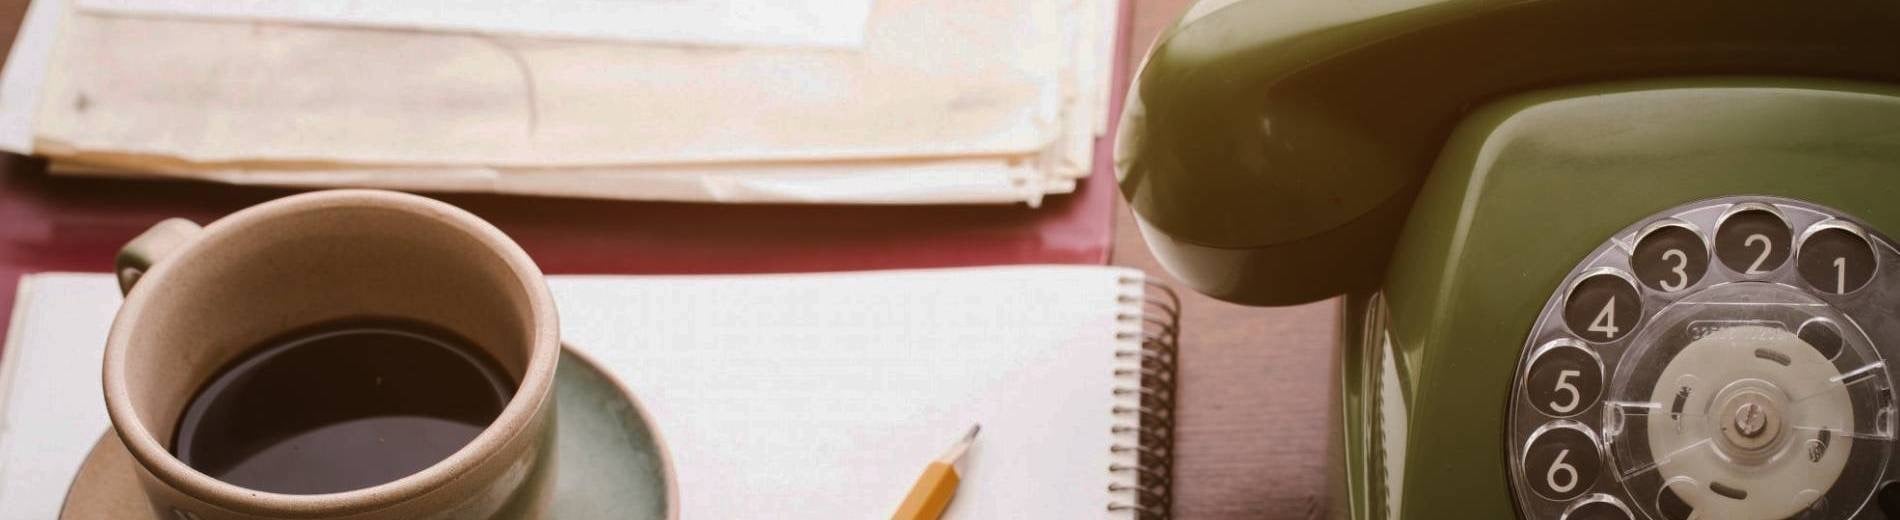 un teléfono verde está sobre una mesa junto a una taza de café y un cuaderno